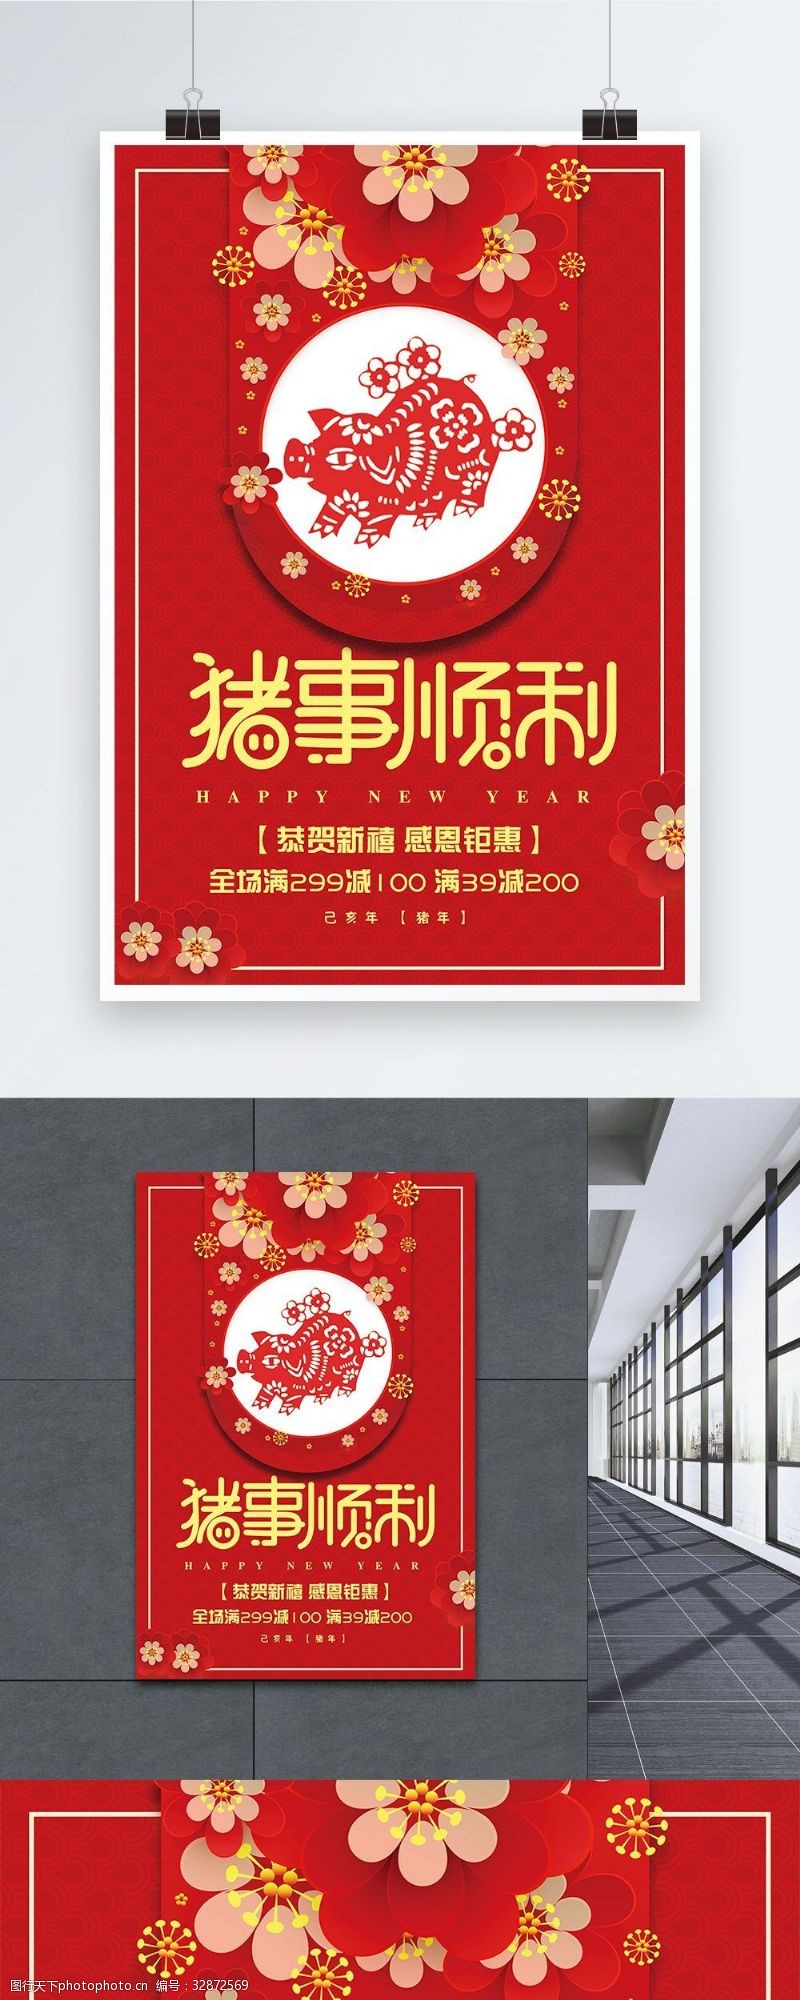 荣耀20192019猪事顺利促销海报设计